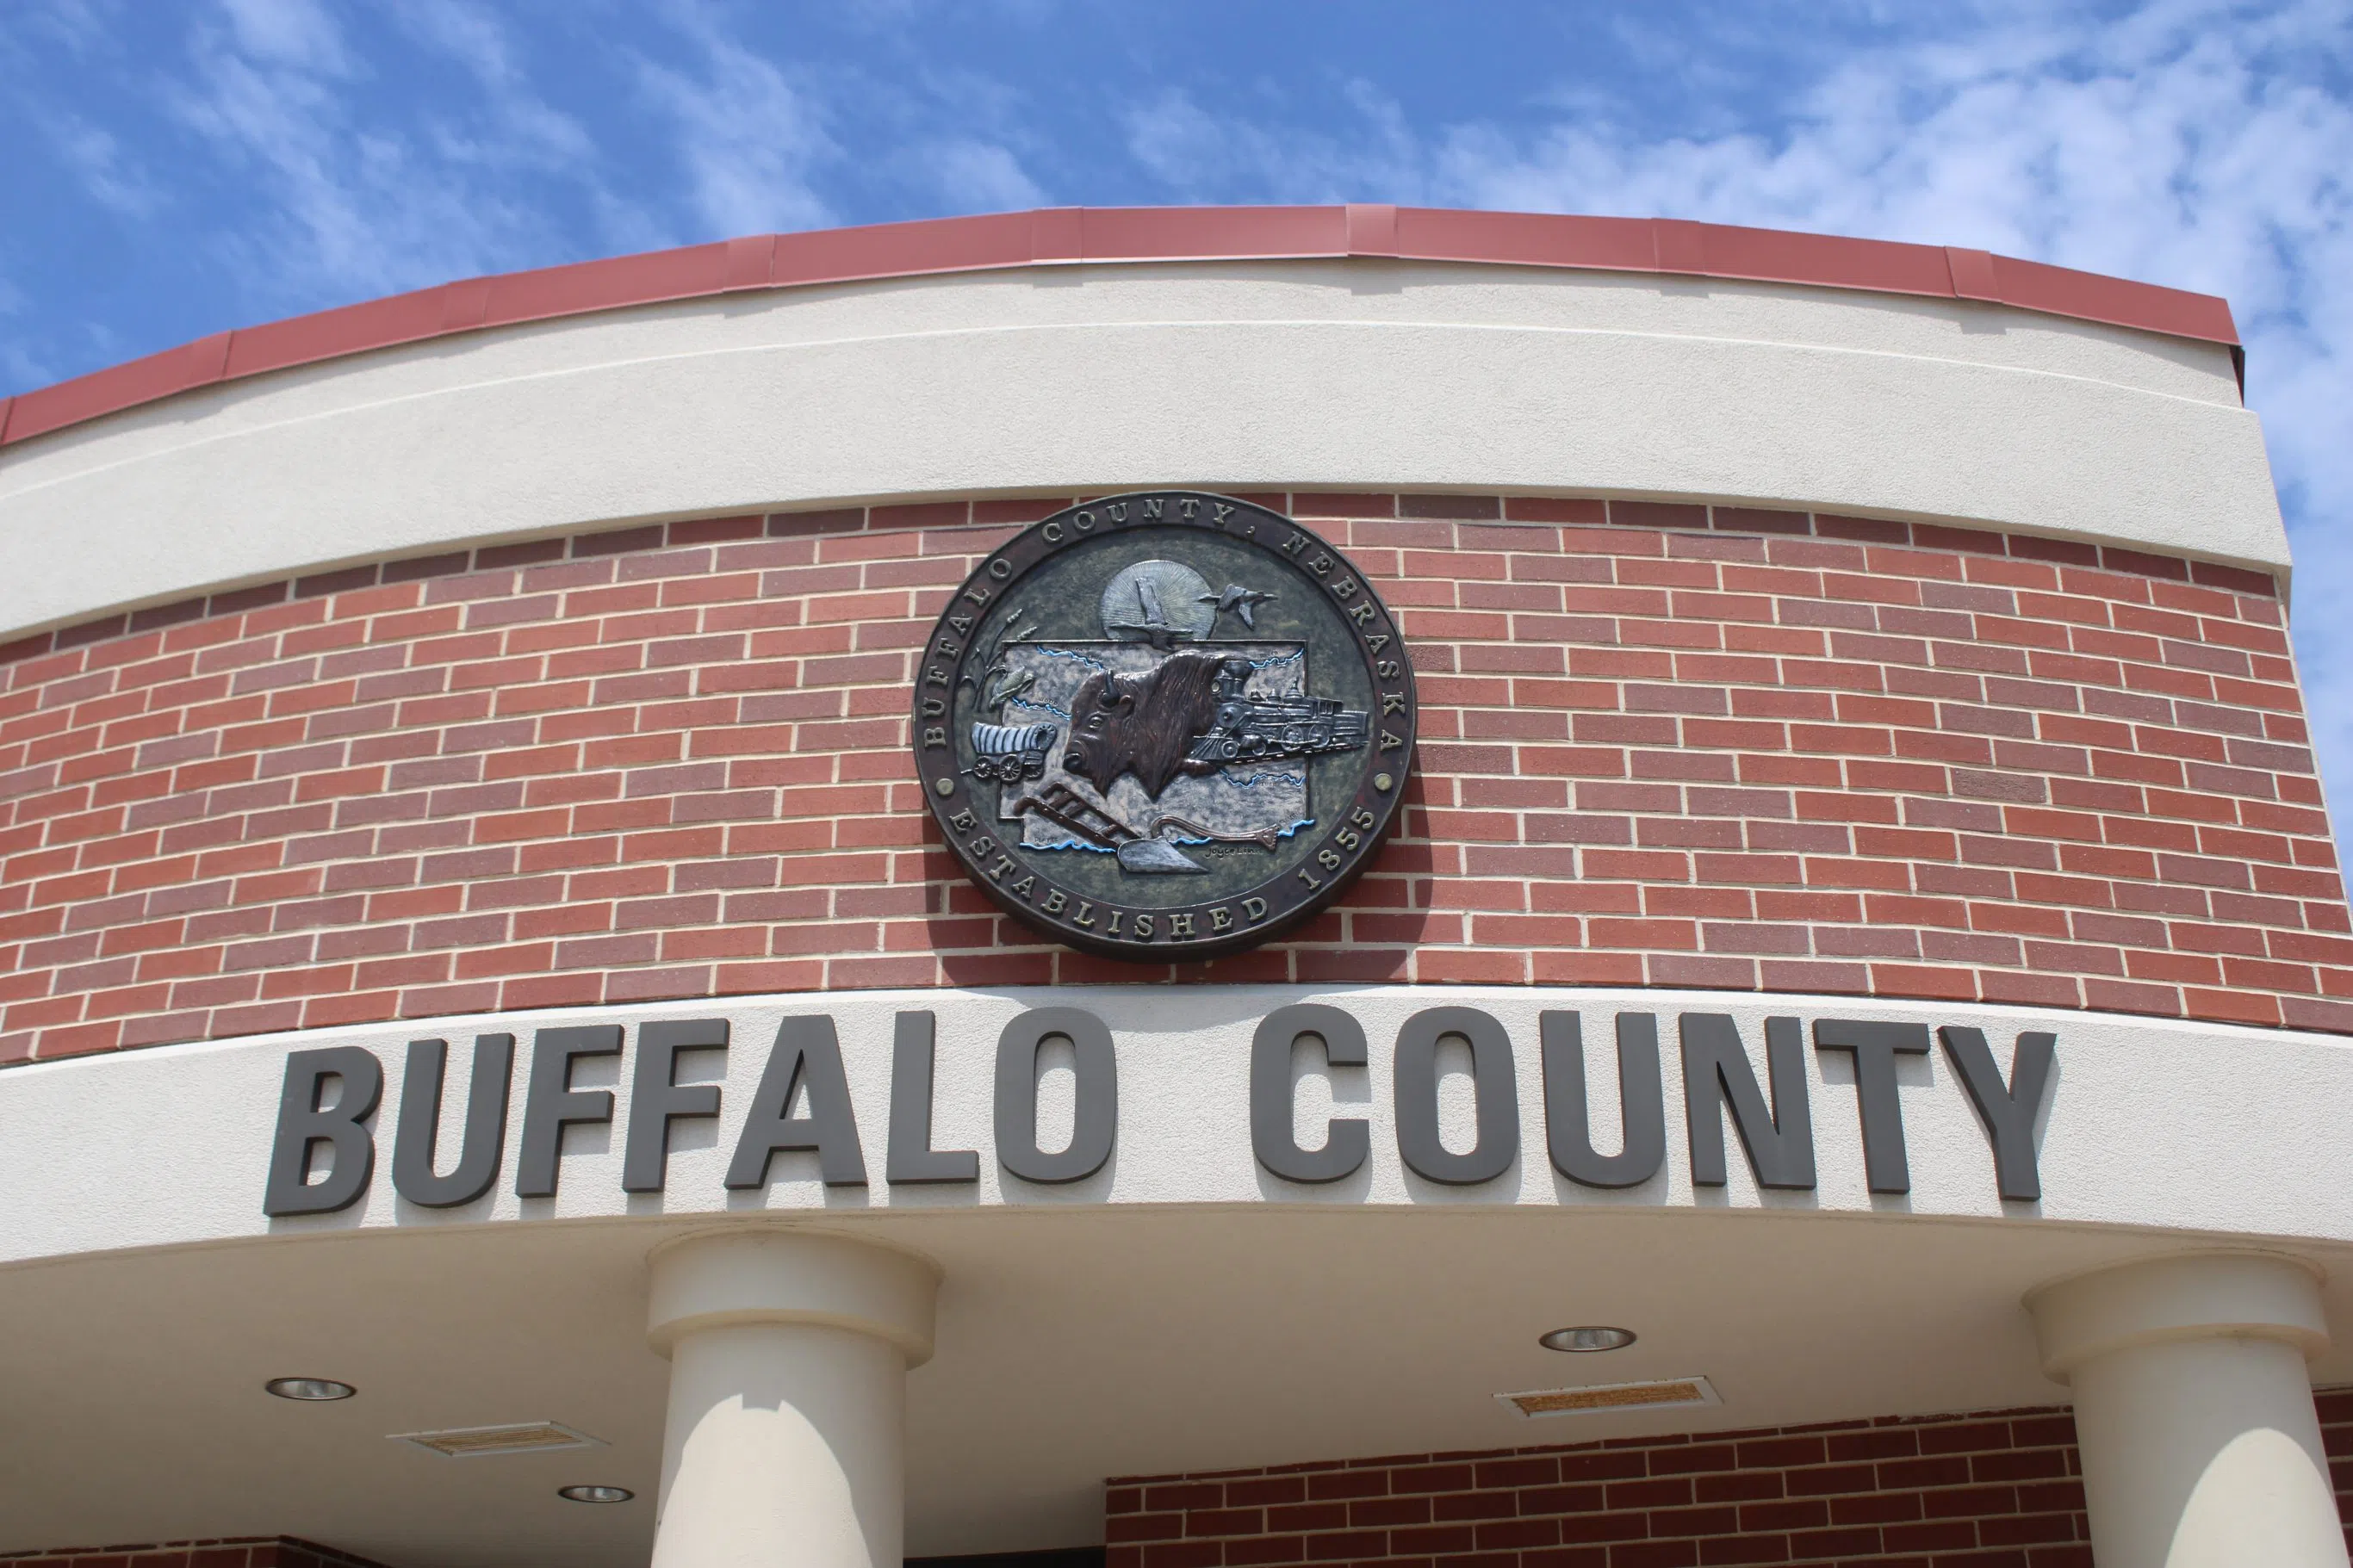 Buffalo County